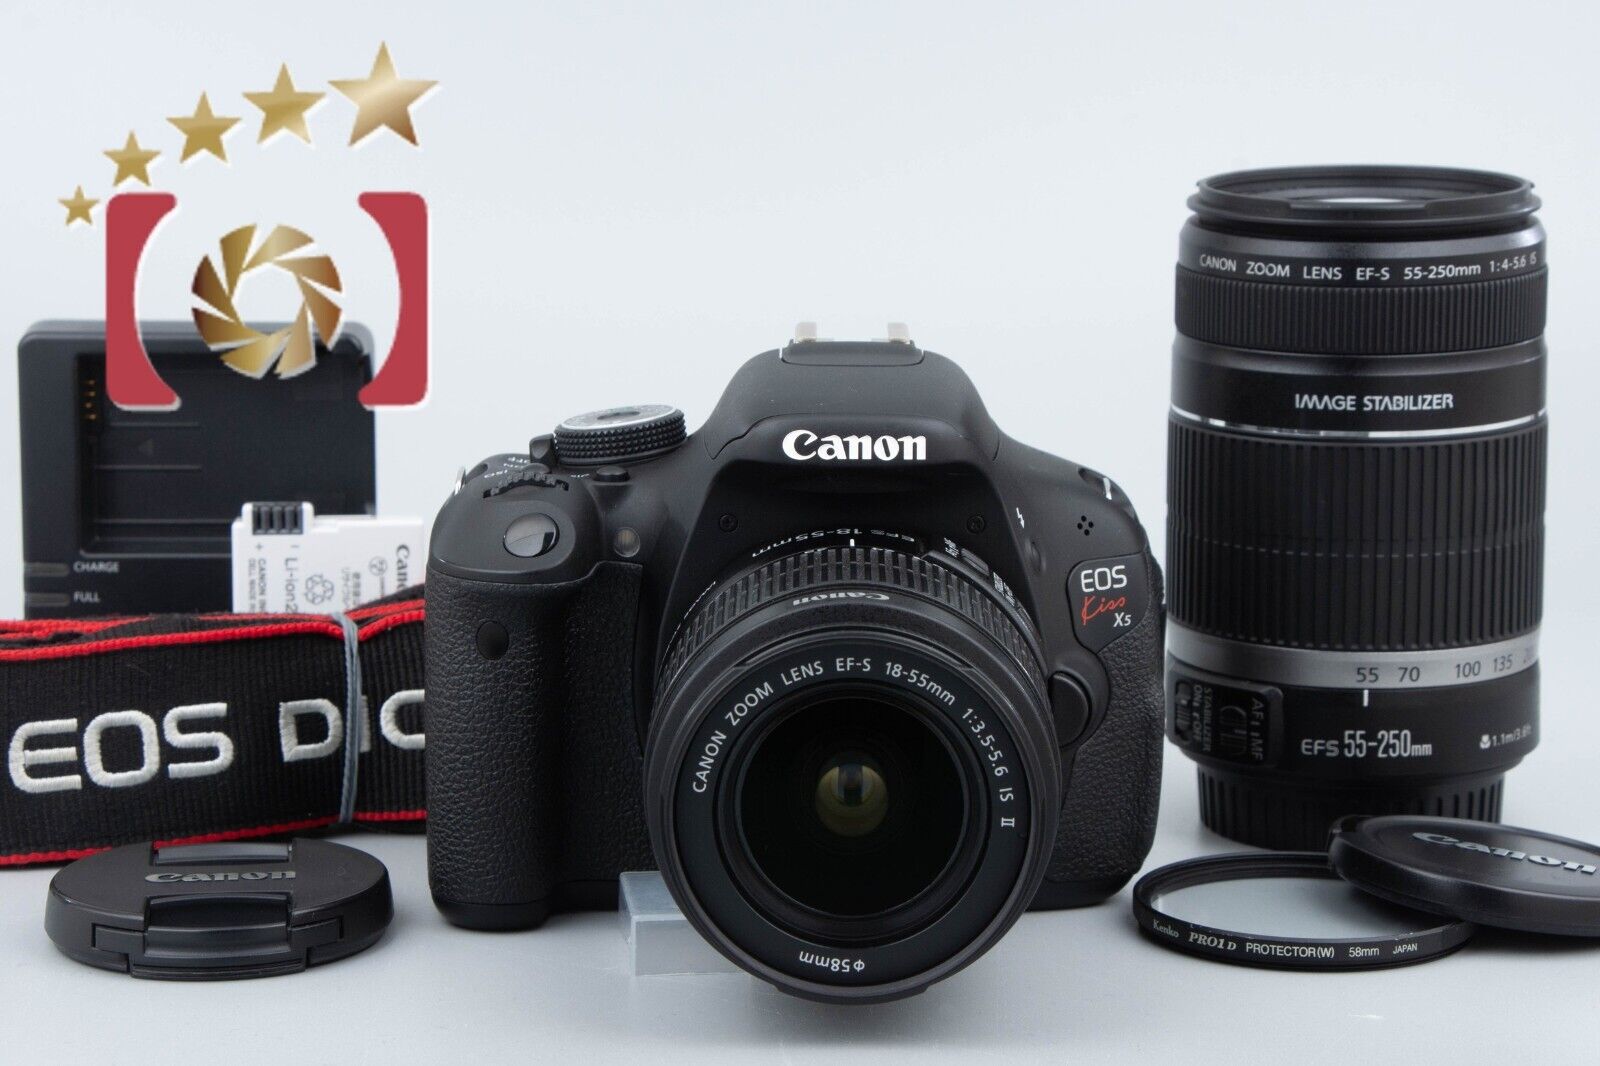 "Count 4,293" Canon EOS Kiss X5 / Rebel T3i / 600D 18.0 MP 18-55 55-250 Lenses